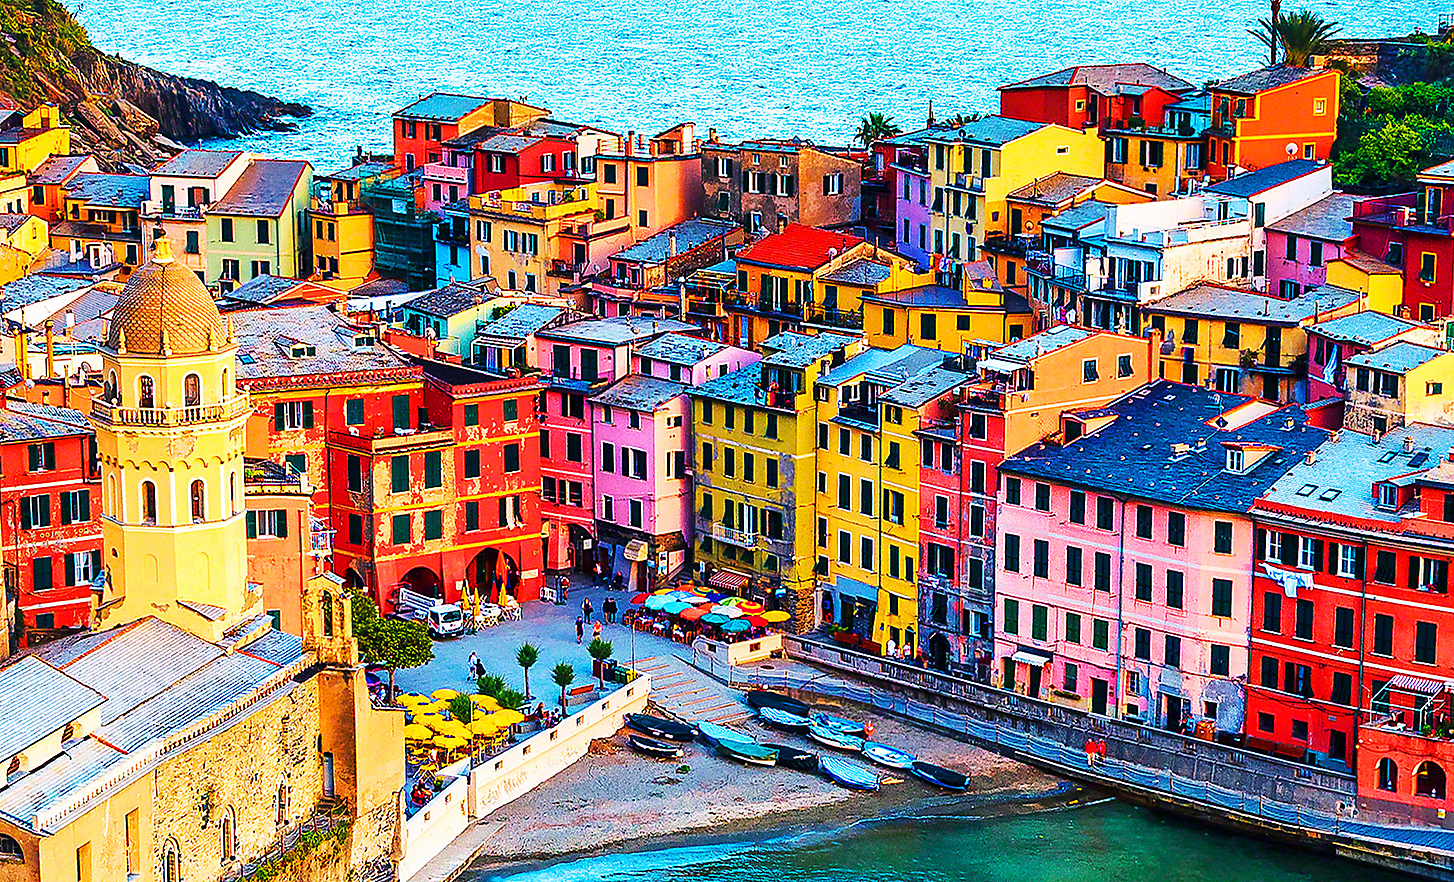 Ηλιόλουστη εικόνα μιας μικρής παραθαλάσσιας πόλης με μια σειρά από φωτεινά χρωματιστά κτίρια, καφέ και ψαρόβαρκες